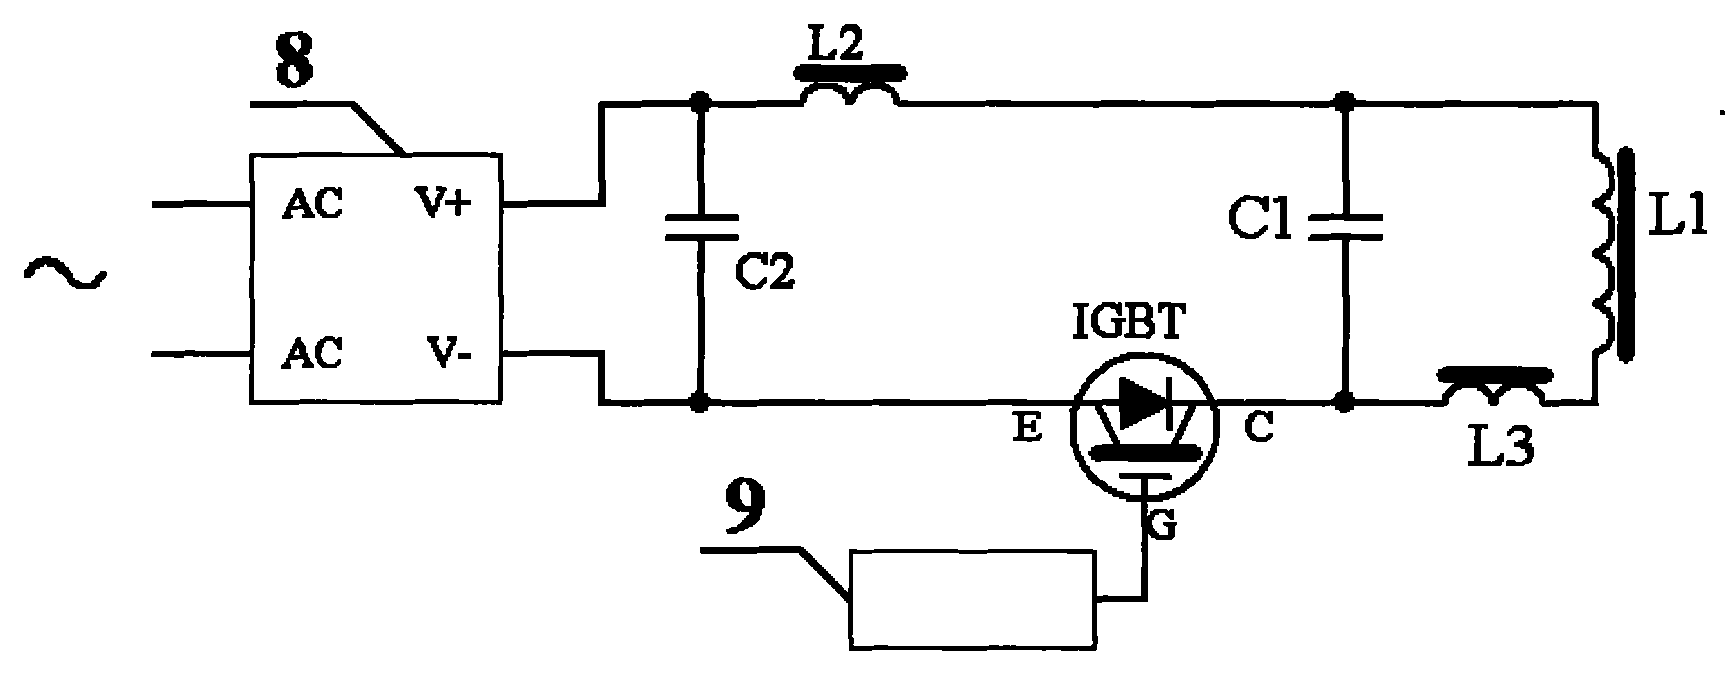 本发明涉及一种电磁感应加热电路,所述功率管是igbt,所述电感是线圈和